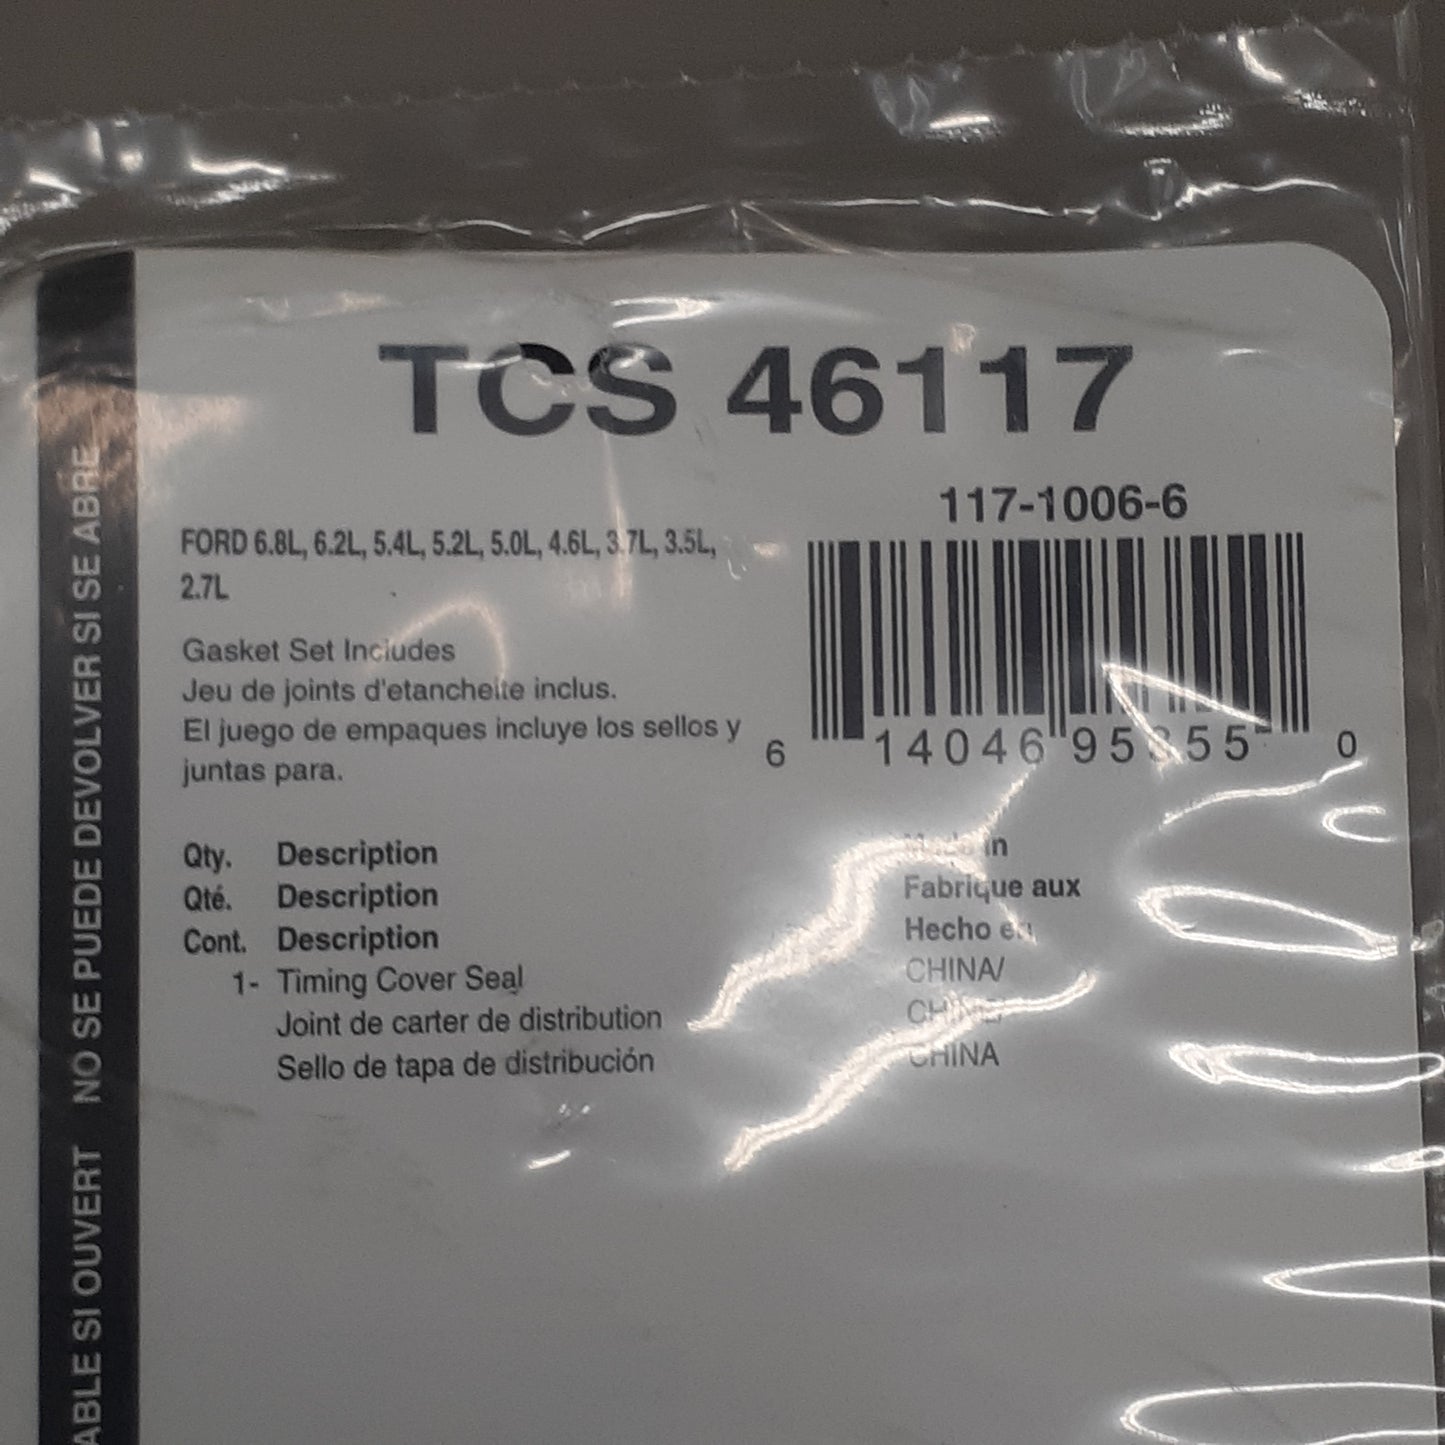 FEL-PRO Crankshaft Front Seal Set TCS46117 (New)